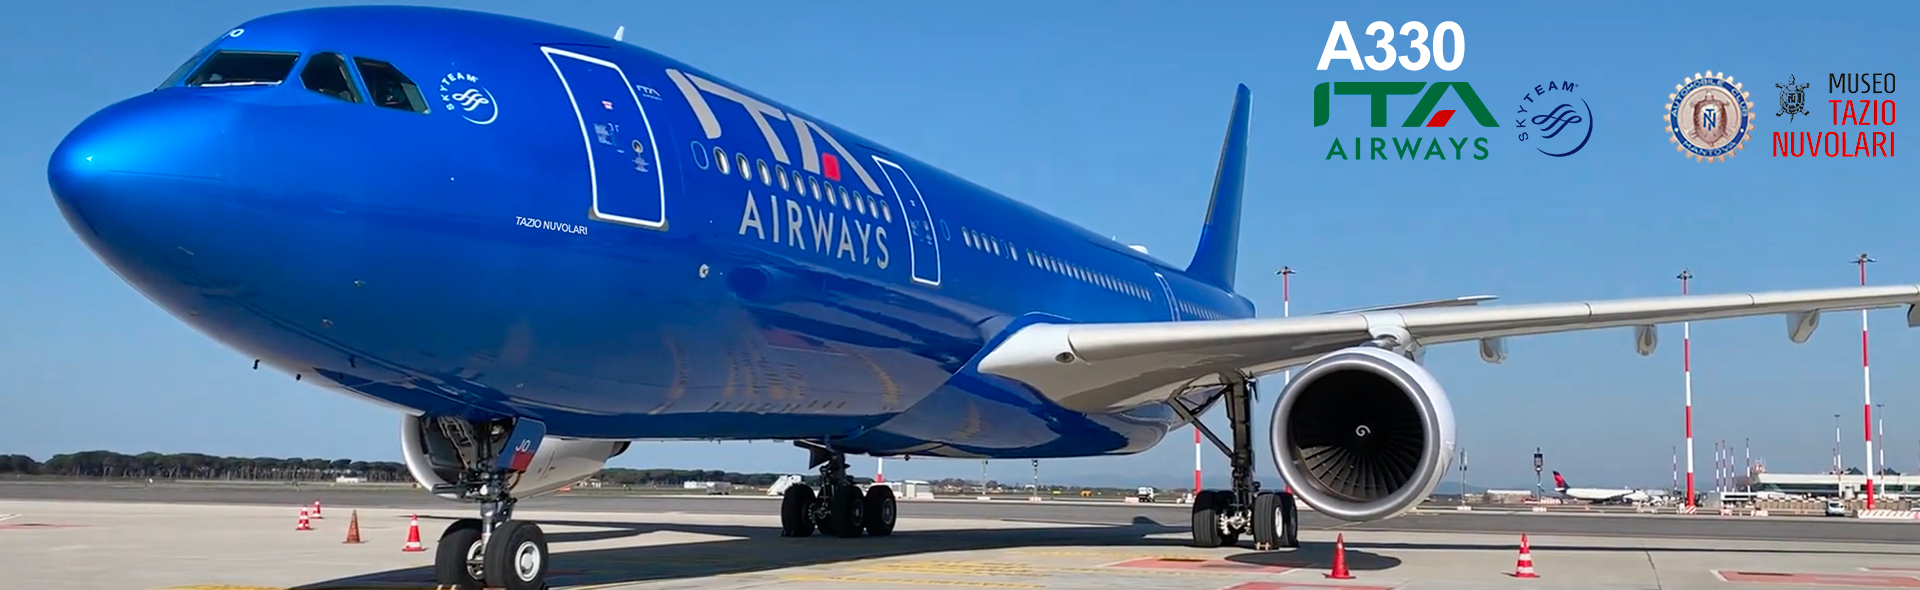 ATI Airways Airbus dedicato a Tazio Nuvolari